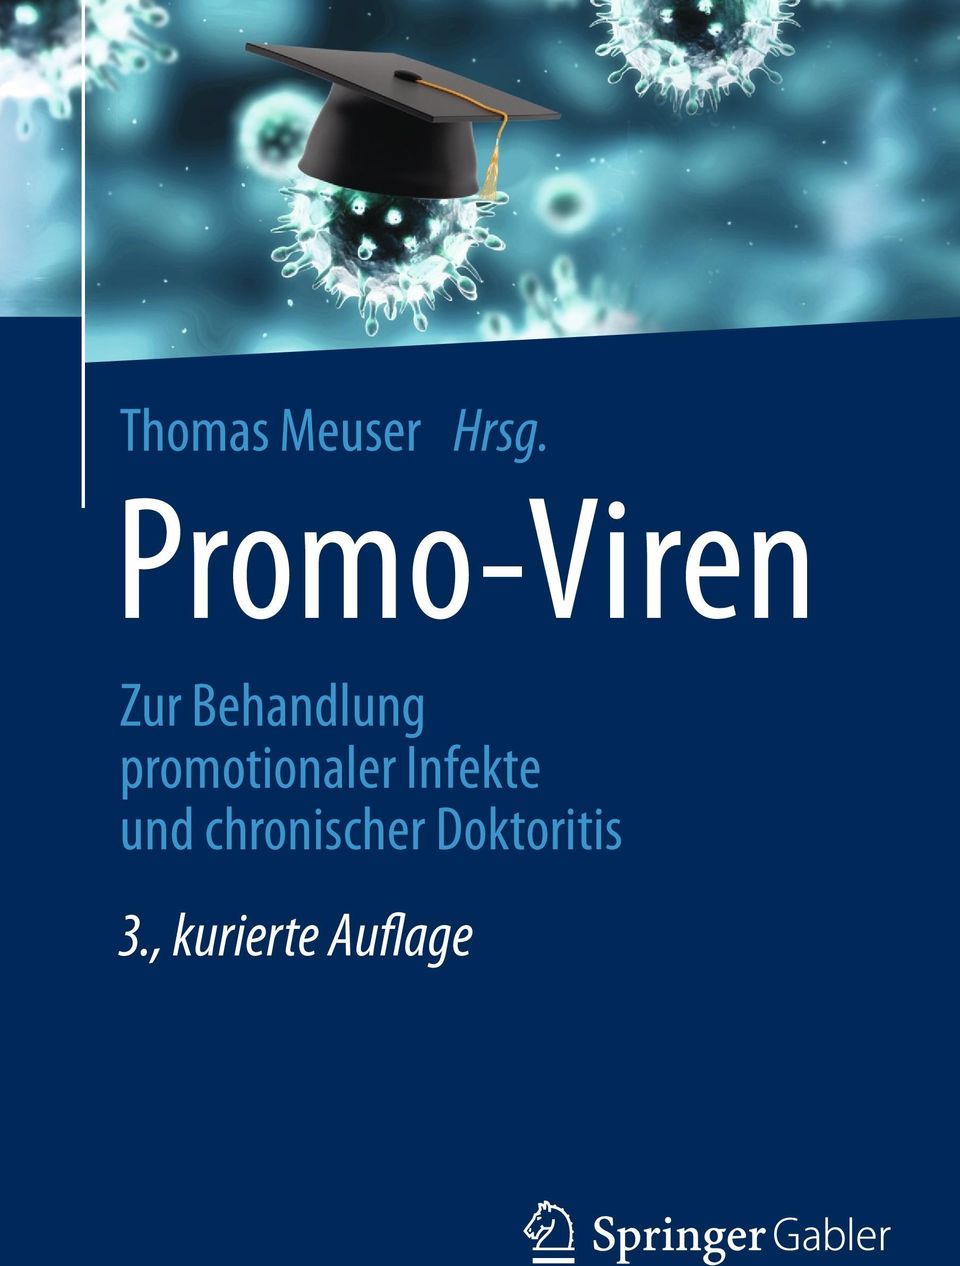 promotionaler Infekte und